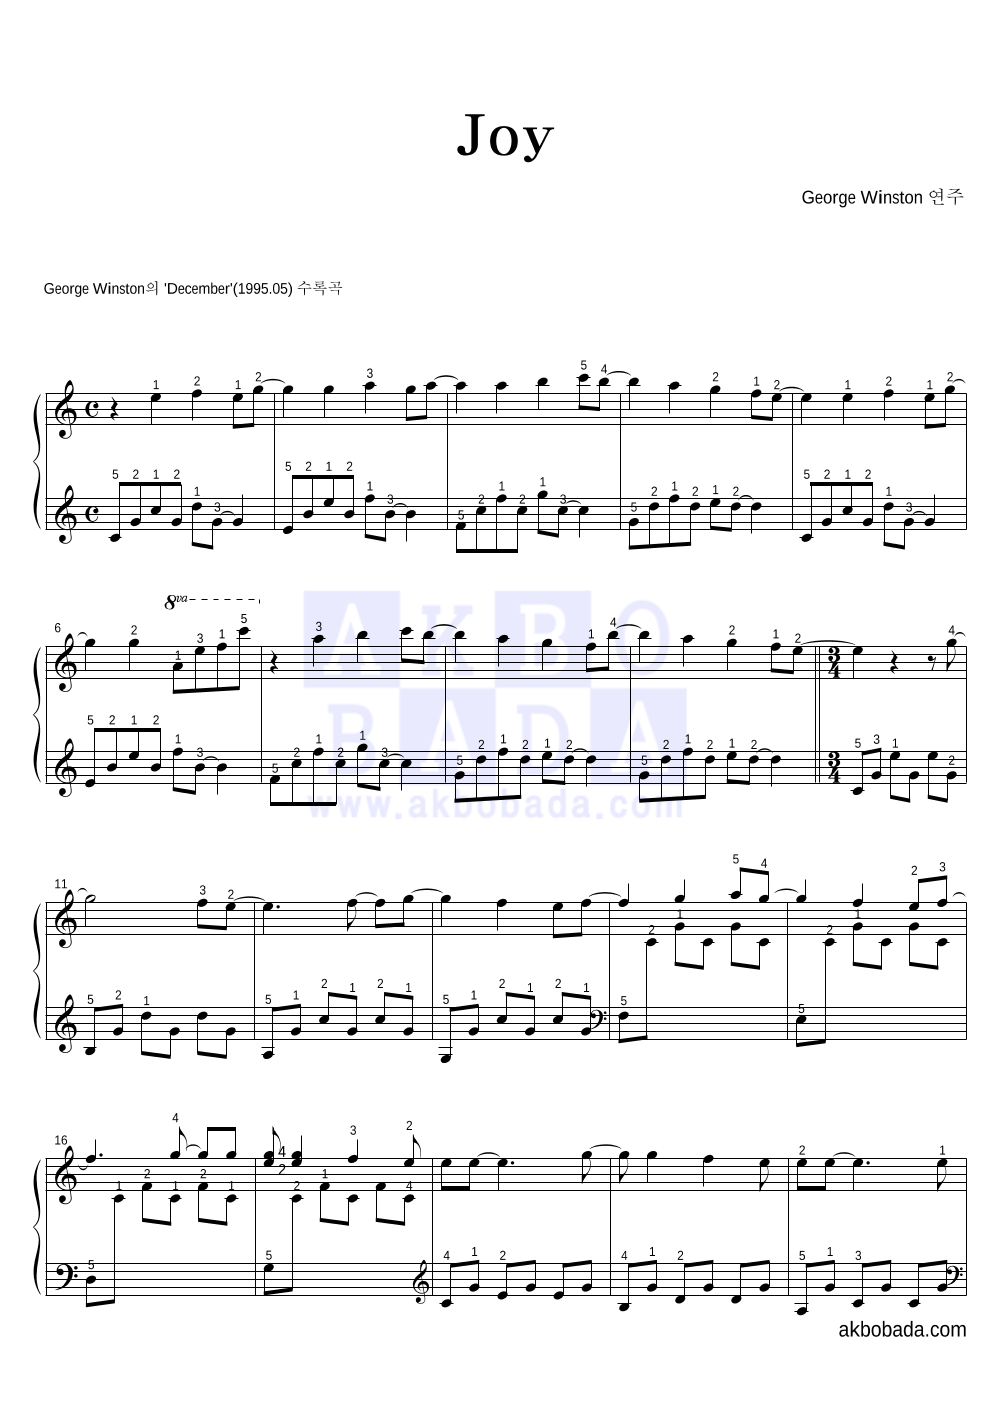 George Winston - Joy 피아노 2단 악보 